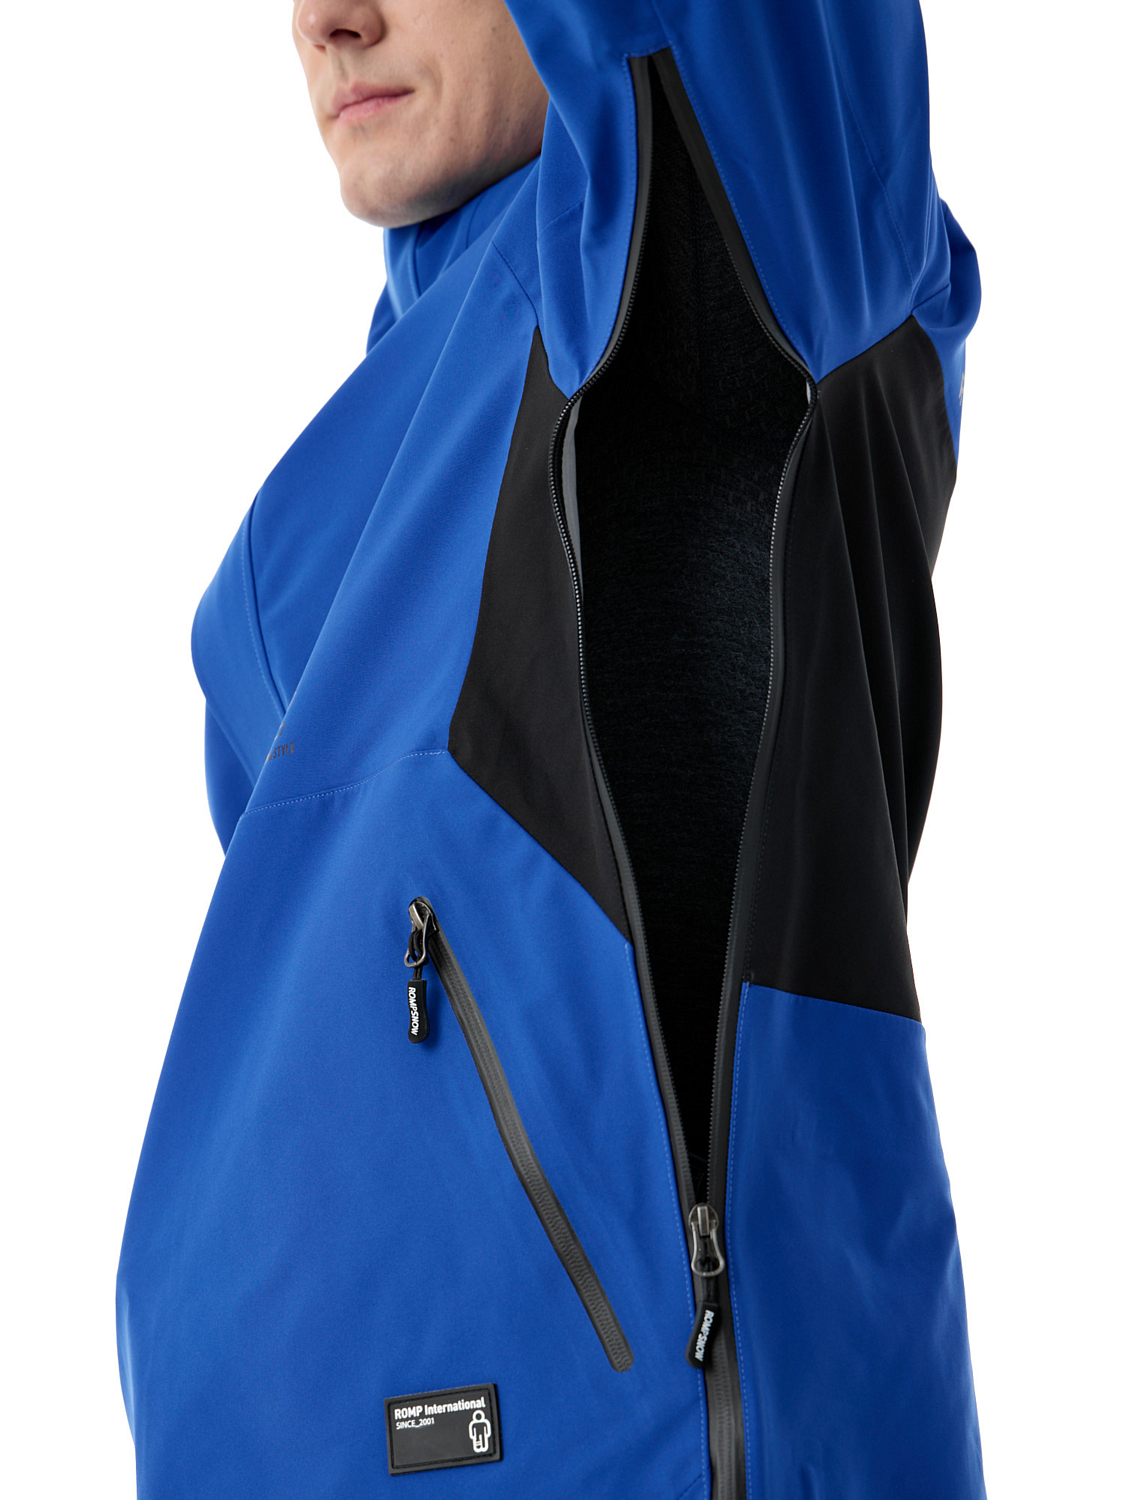 Куртка сноубордическая ROMP R2 Anorak Jacket M Blue